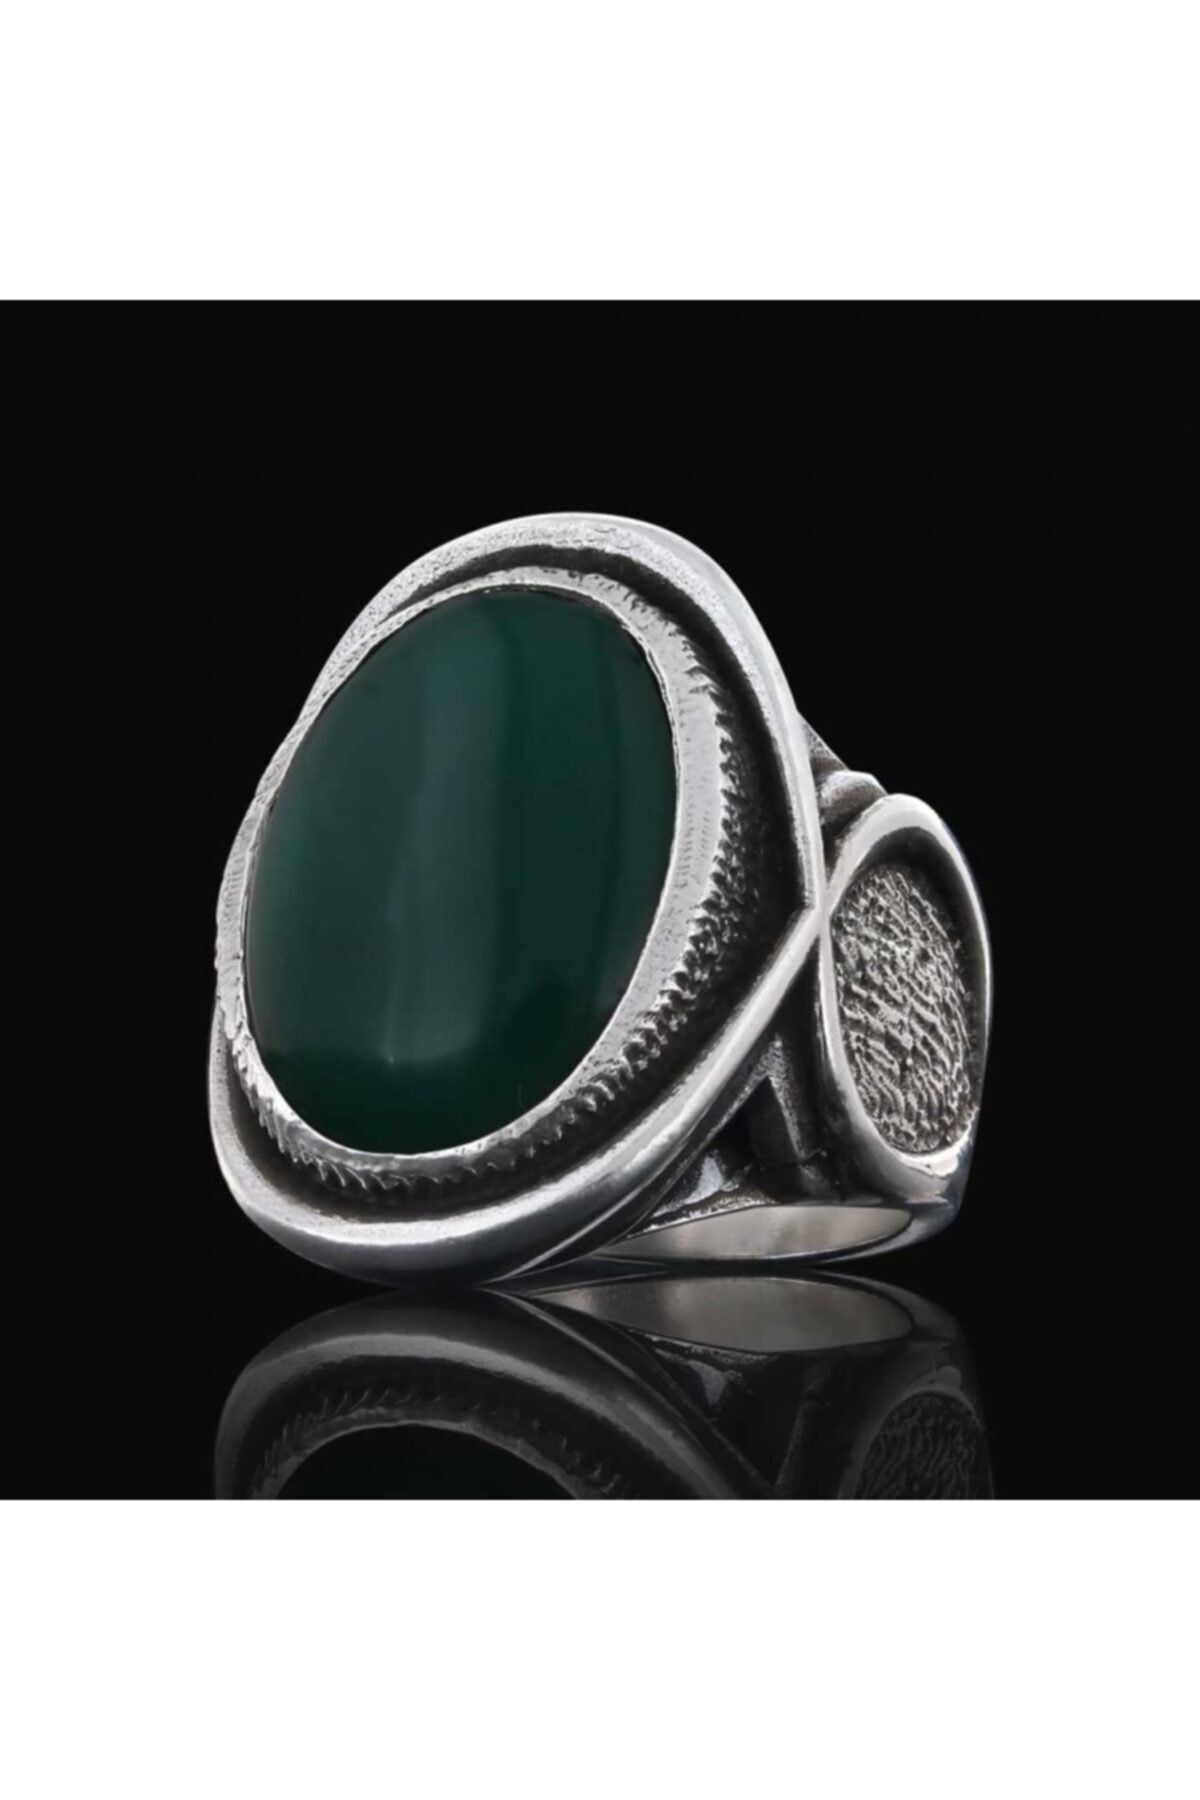 ELMAS İŞ Özel Tasarım 925 Ayar Gümüş Yeşil Akik Taşlı Koleksiyon Yüzük